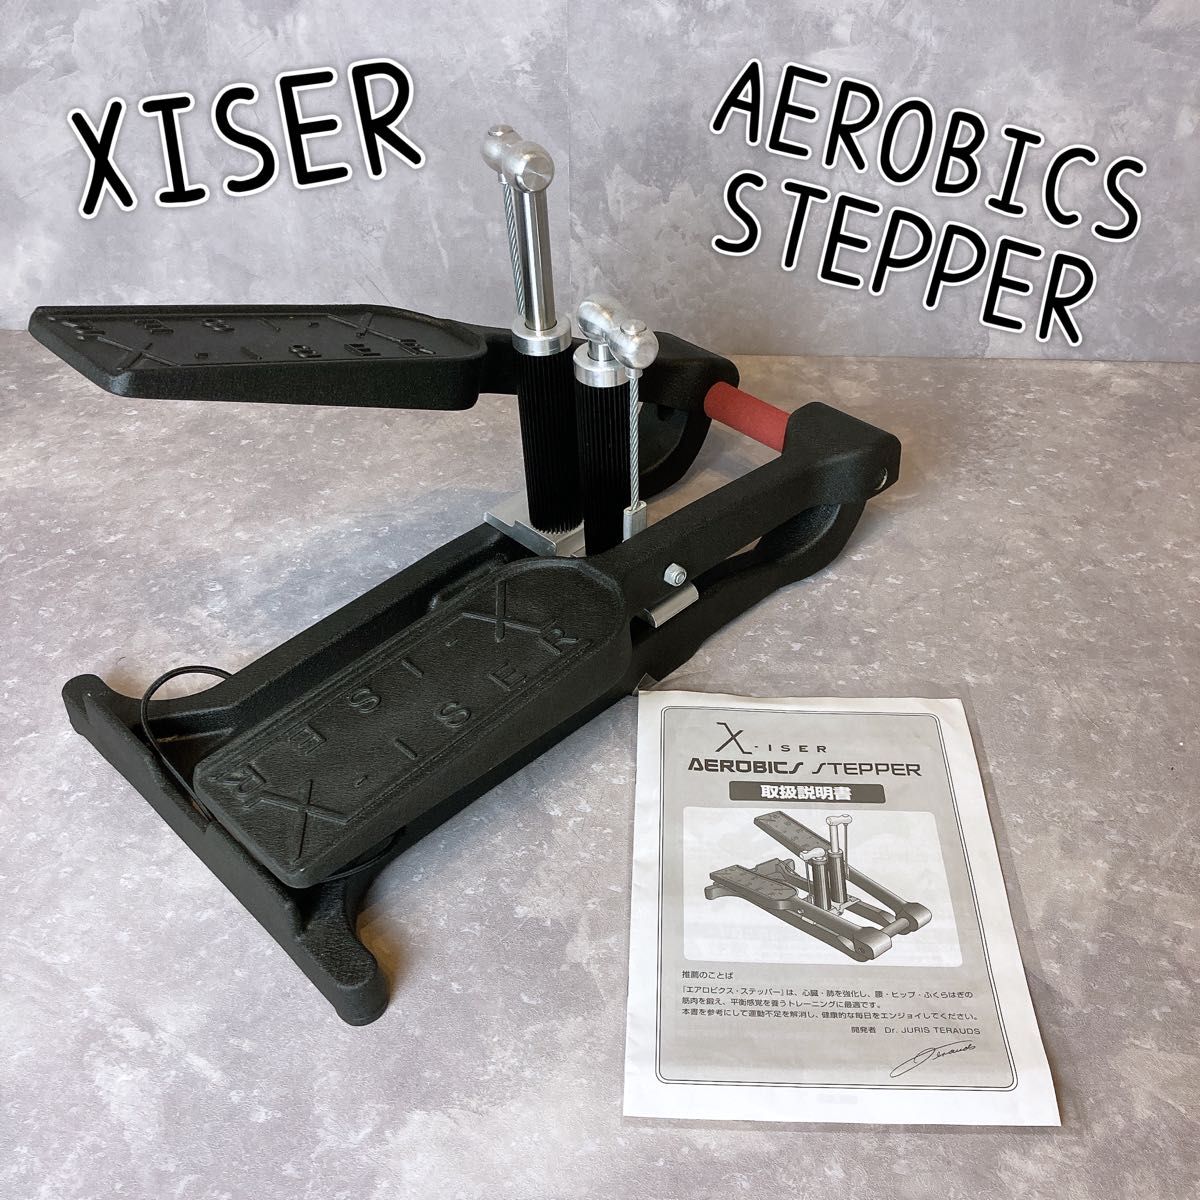 通販生活 エクサー ステッパー XISER aerobics stepper-